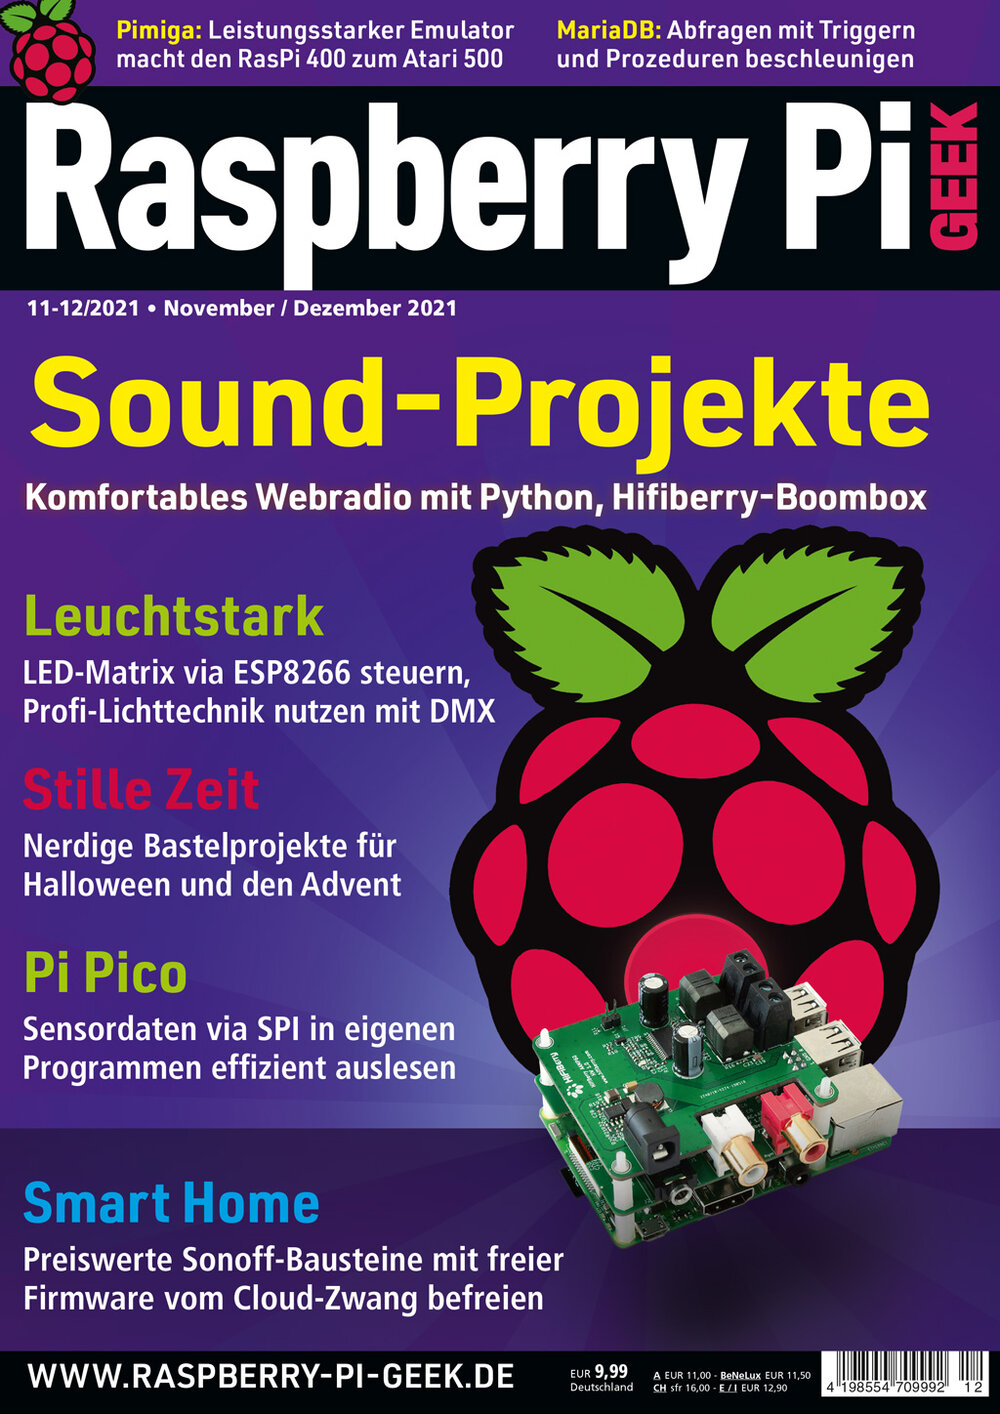 Raspberry Pi Geek 12/2021